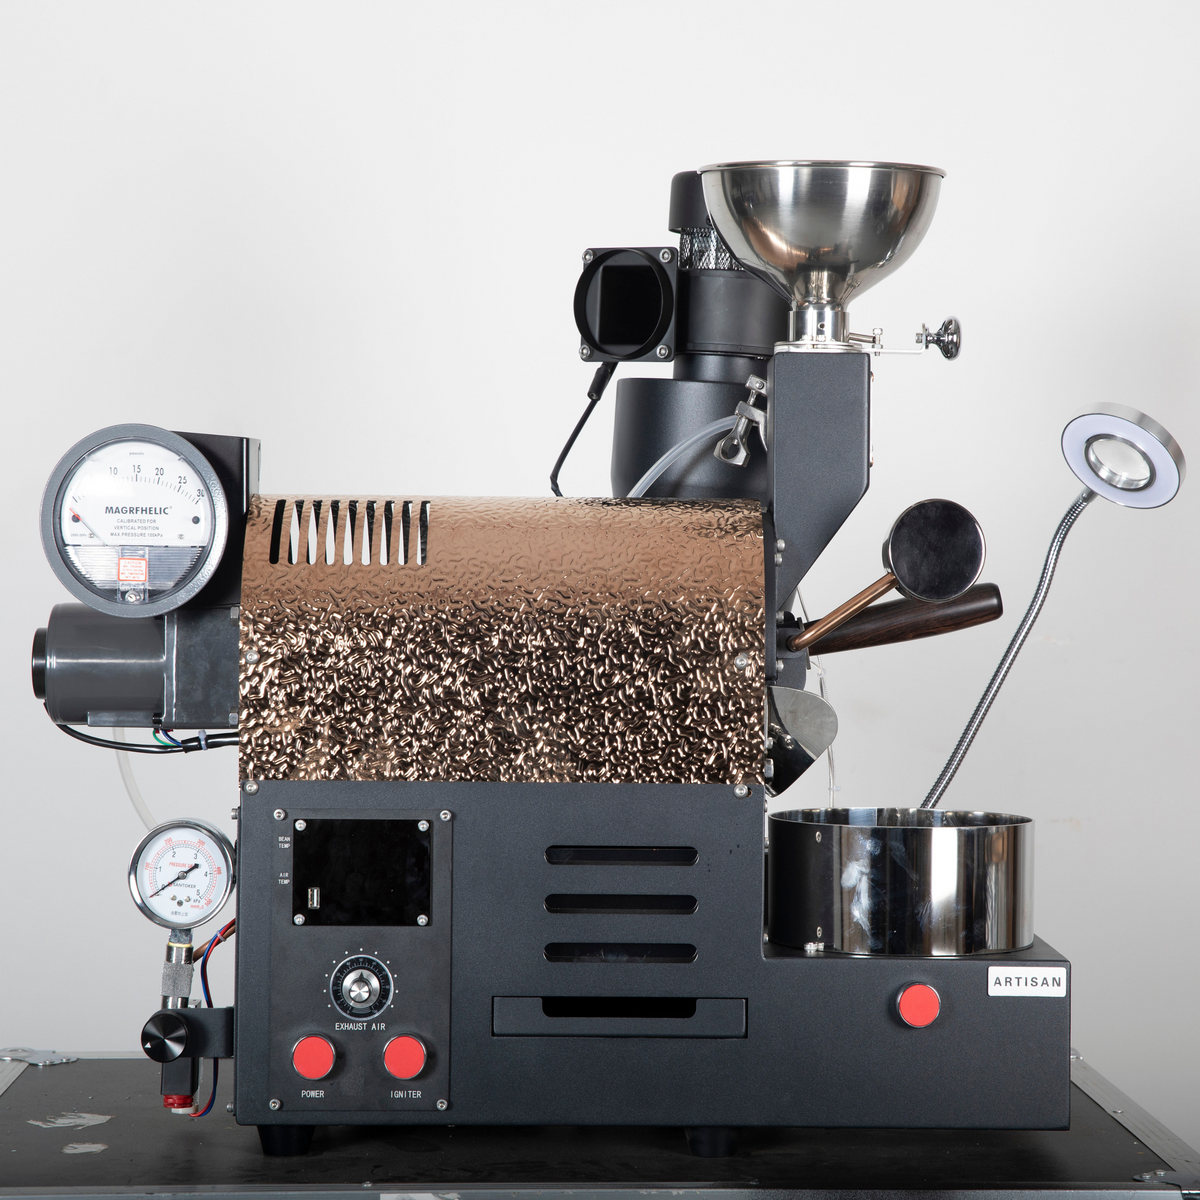 Santoker R200 咖啡烘焙机 - 300g/批